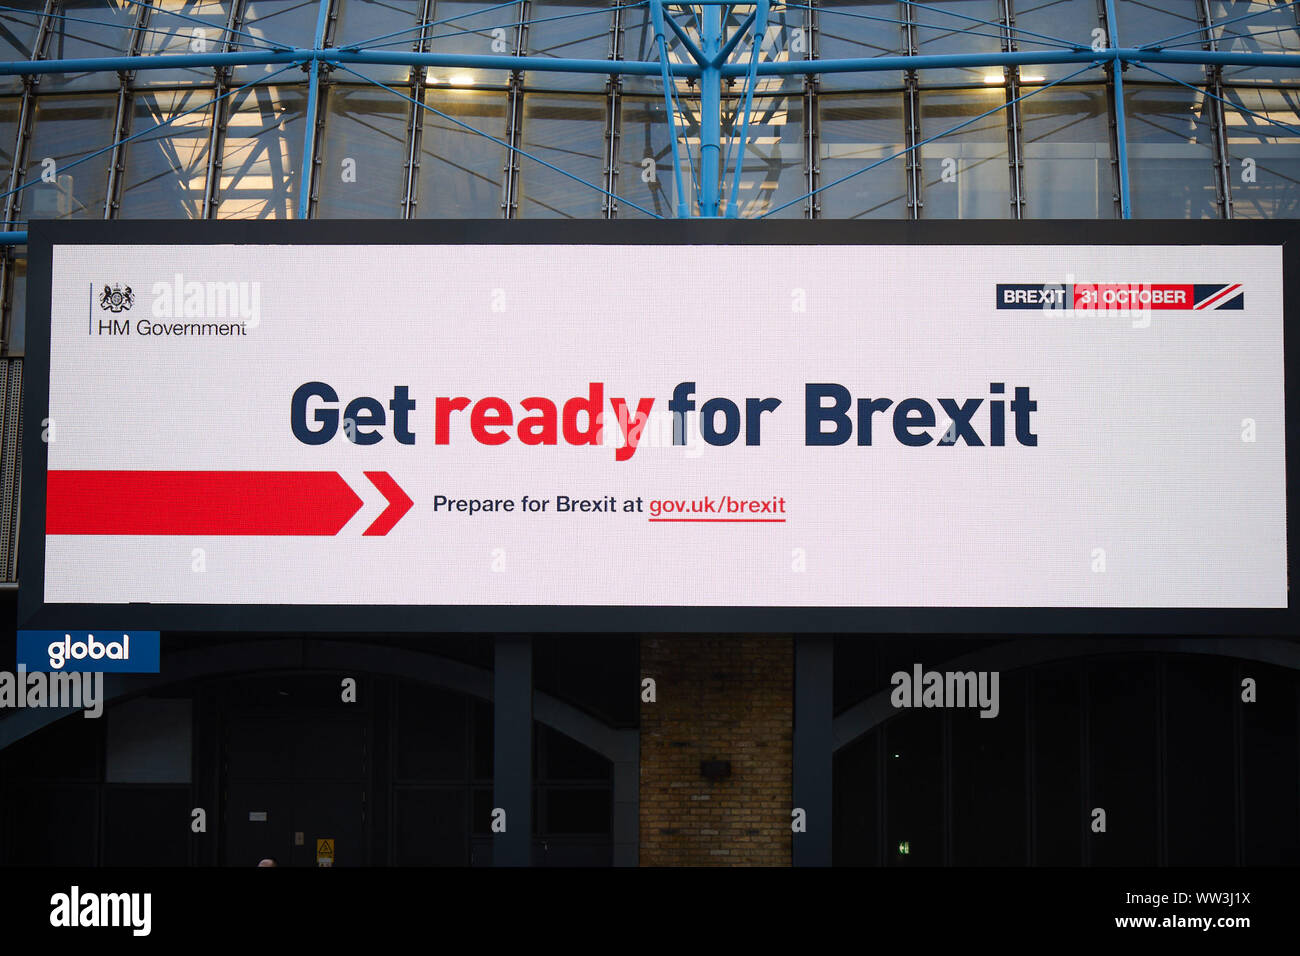 Londres, Royaume-Uni - 10 septembre 2019 : une annonce à Waterloo dans le cadre de la nouvelle campagne du gouvernement qui appelle à se préparer à Brexit. Banque D'Images